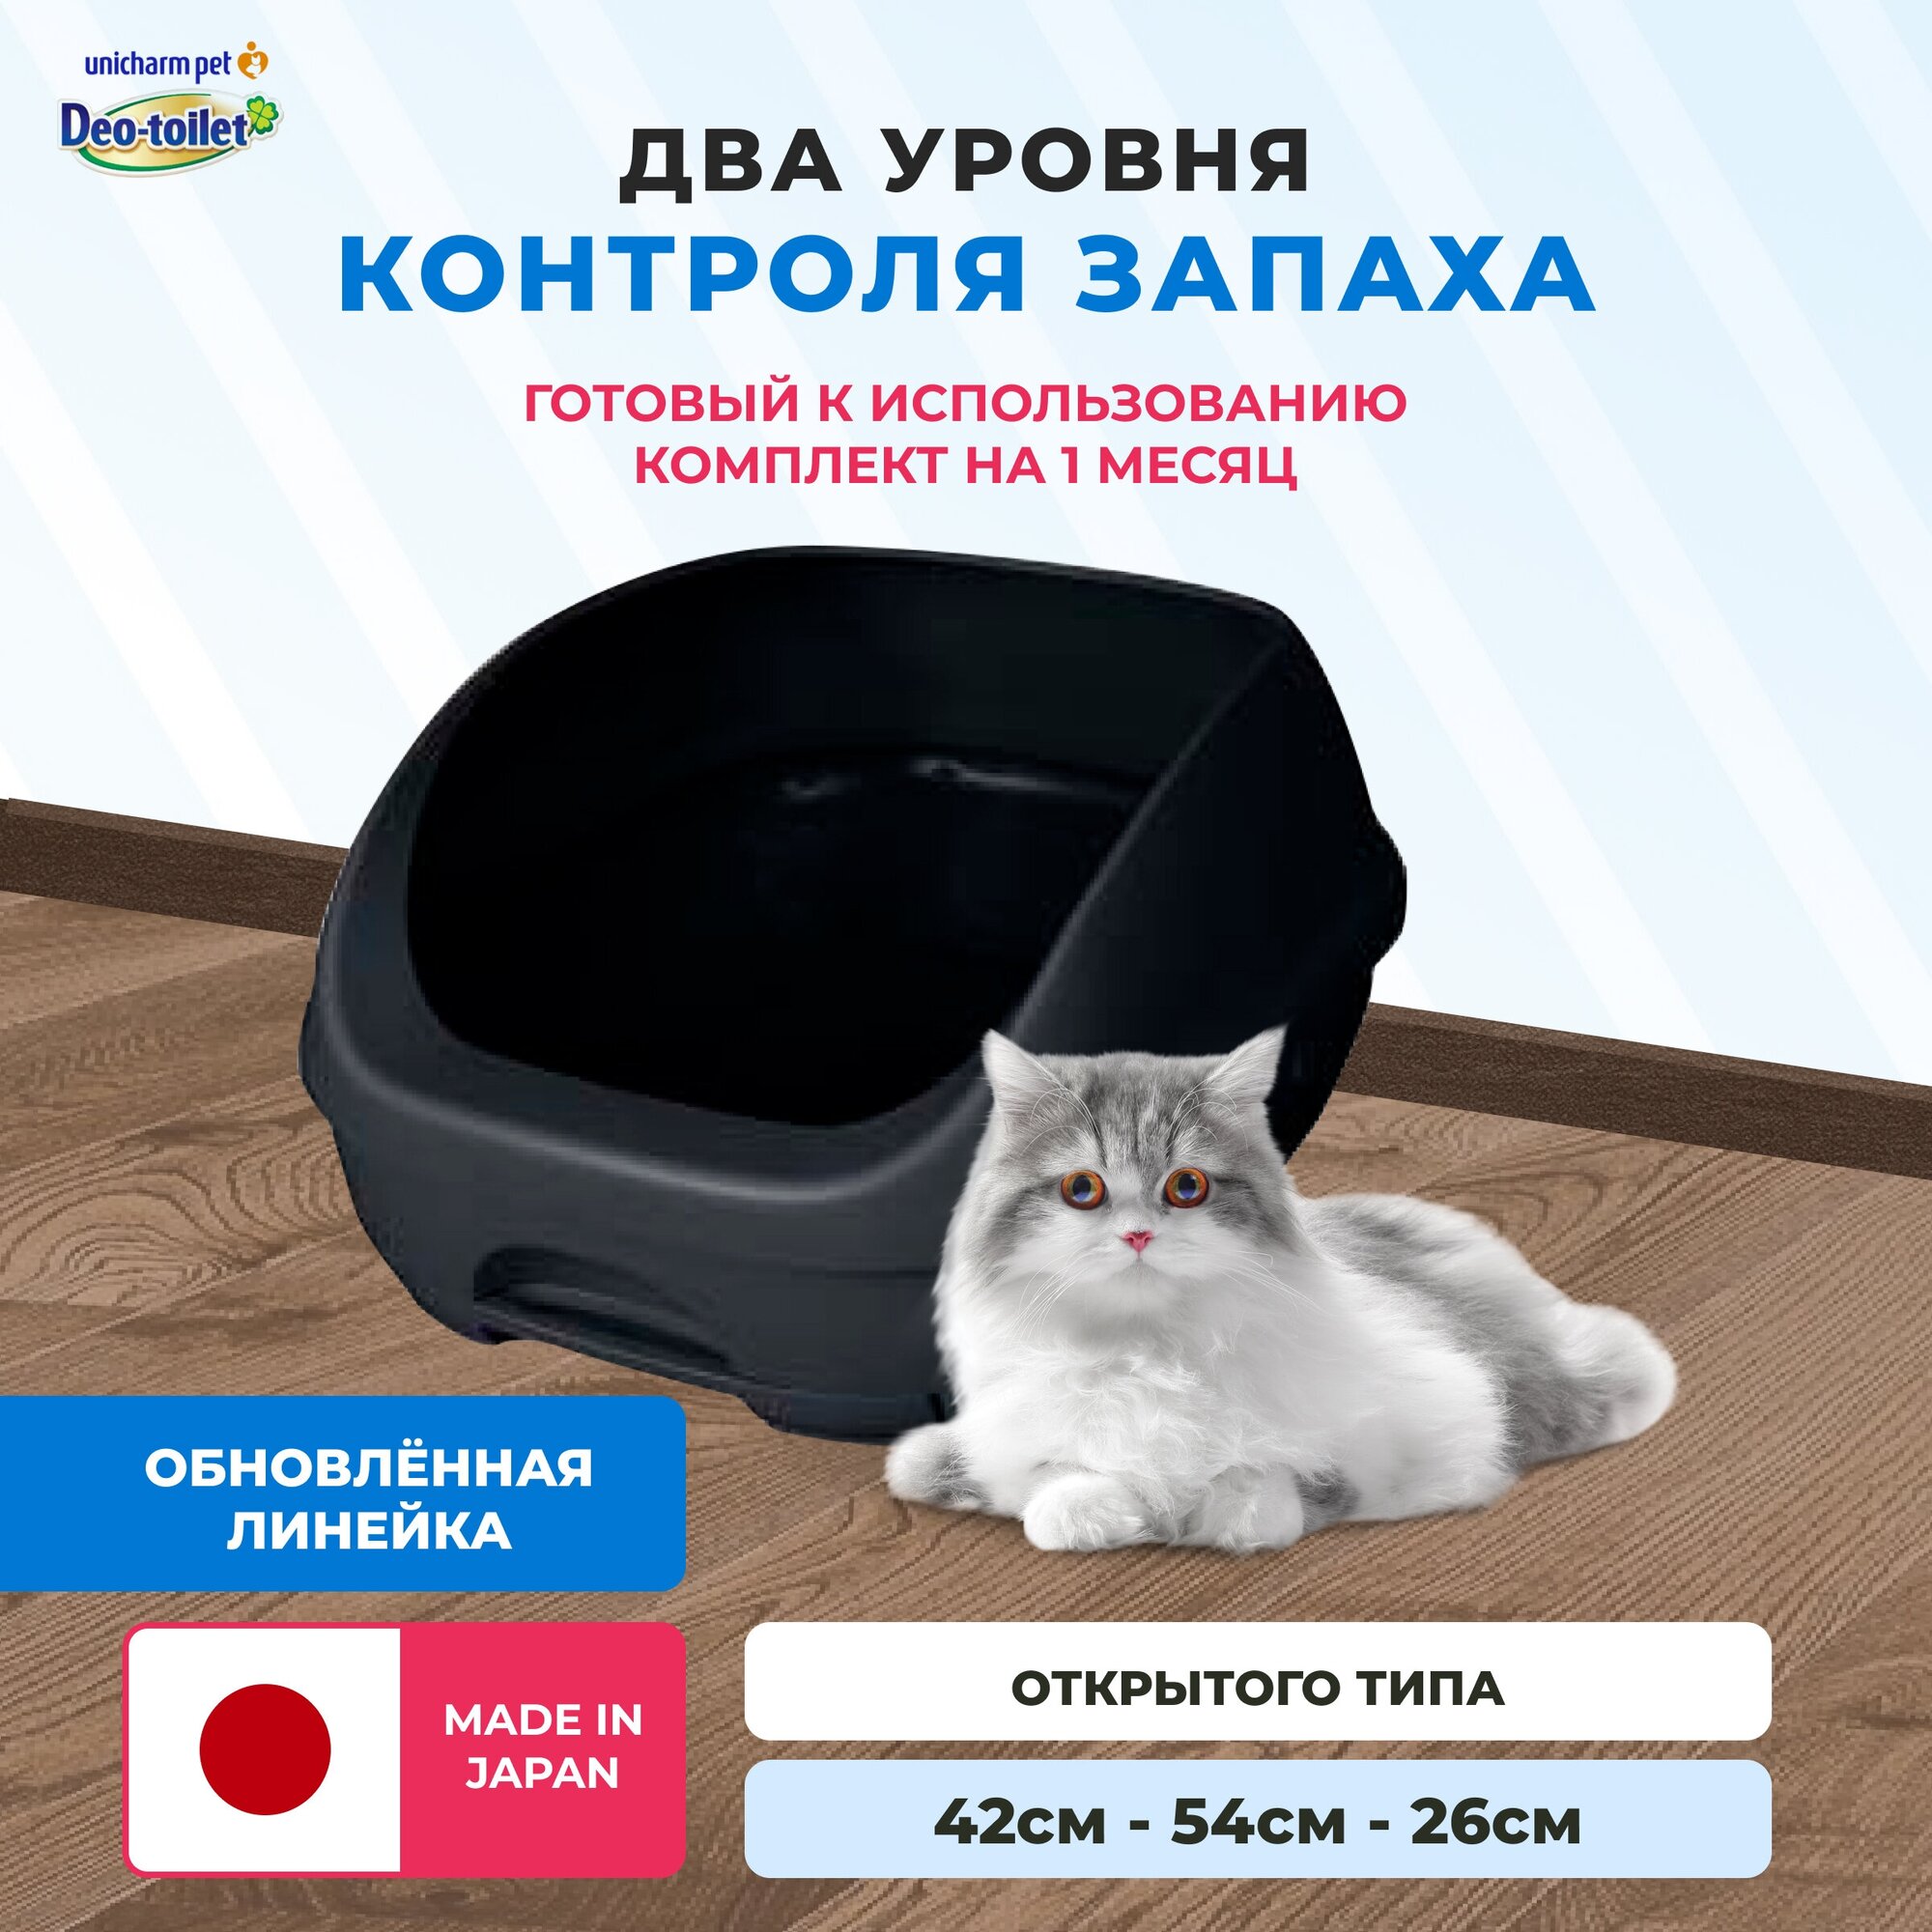 Unicharm DeoToilet Системный туалет для кошек открытого типа. Цвет темно серый (набор) - фотография № 1